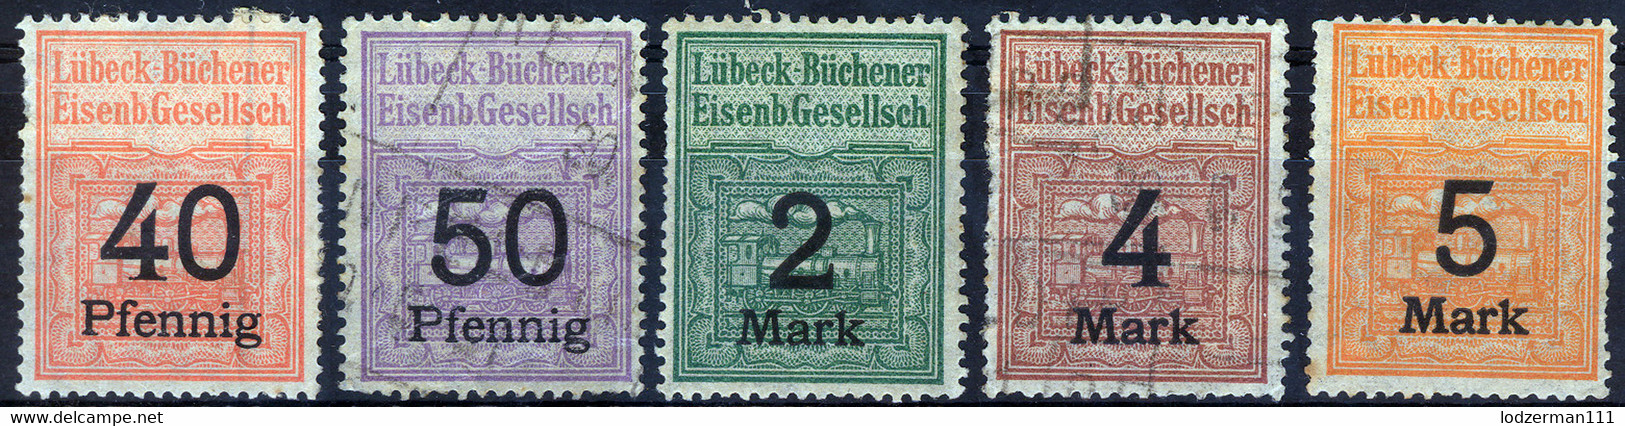 Lubeck-Buchener Eisenb. Gesellsch. (rare) Mix - Luebeck